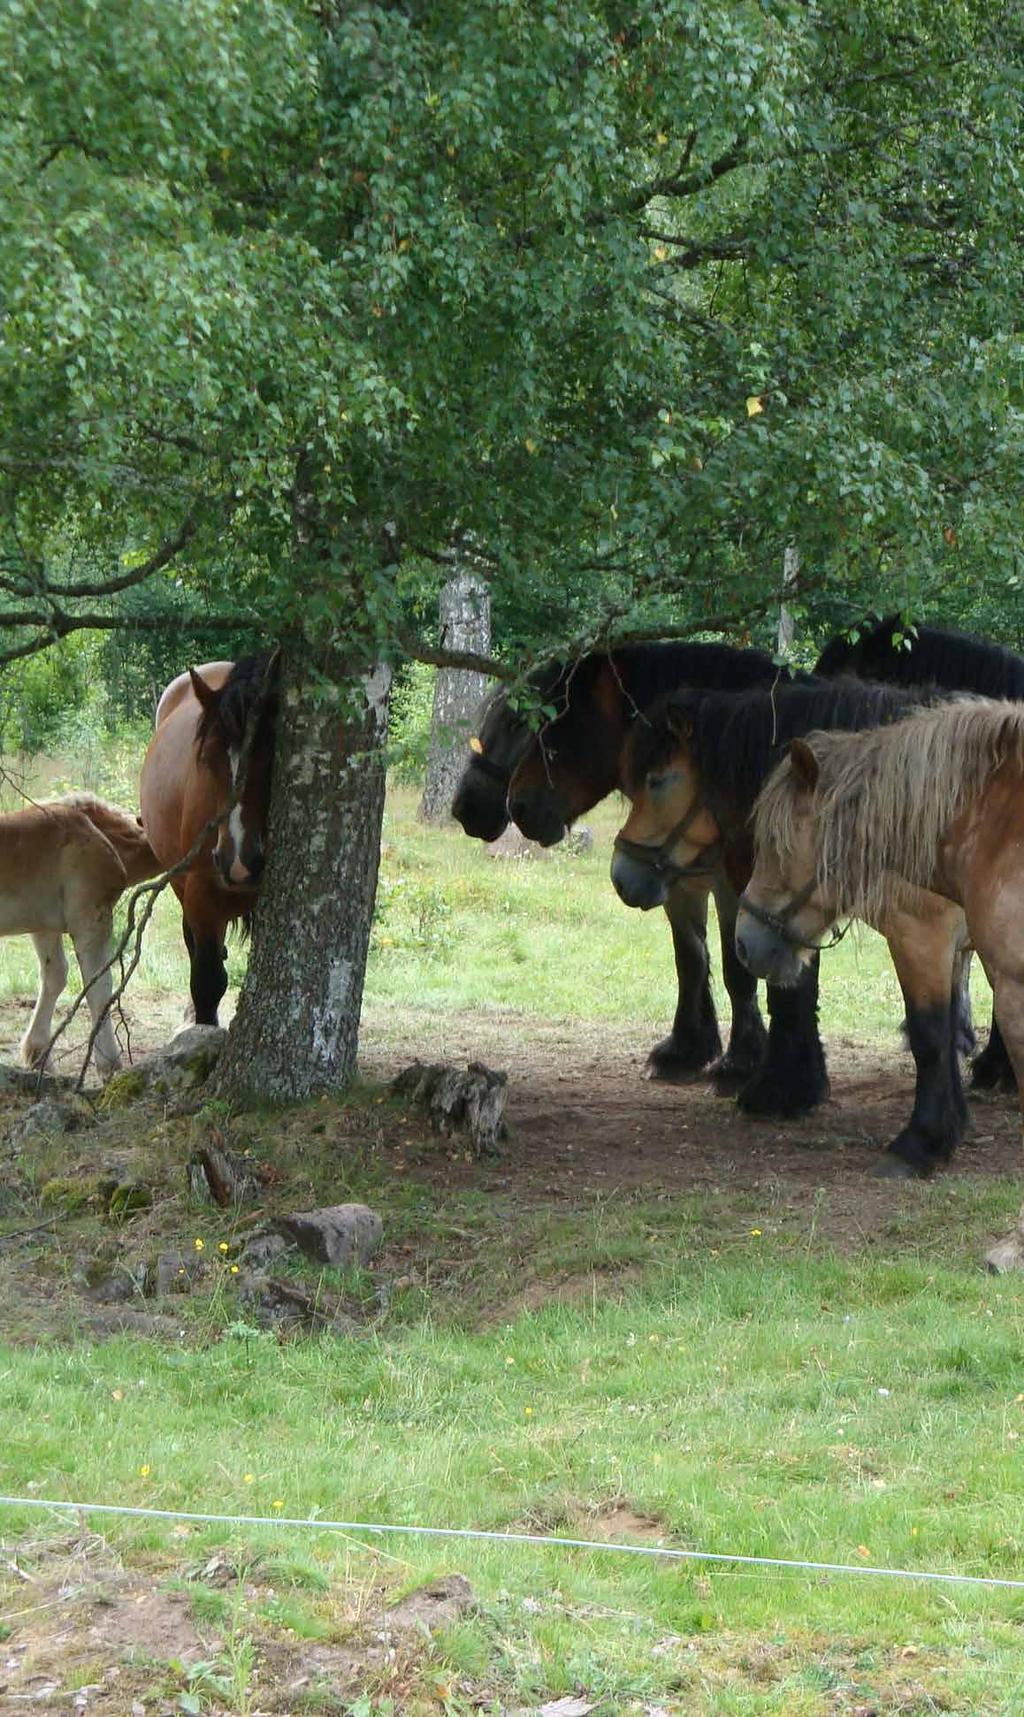 Man brukar räkna med att ett hektar högavkastande naturbetesmark i början av säsongen räcker som bete till mellan en och tre normalstora hästar, medan det på magrare marker krävs 1,5 ha för samma